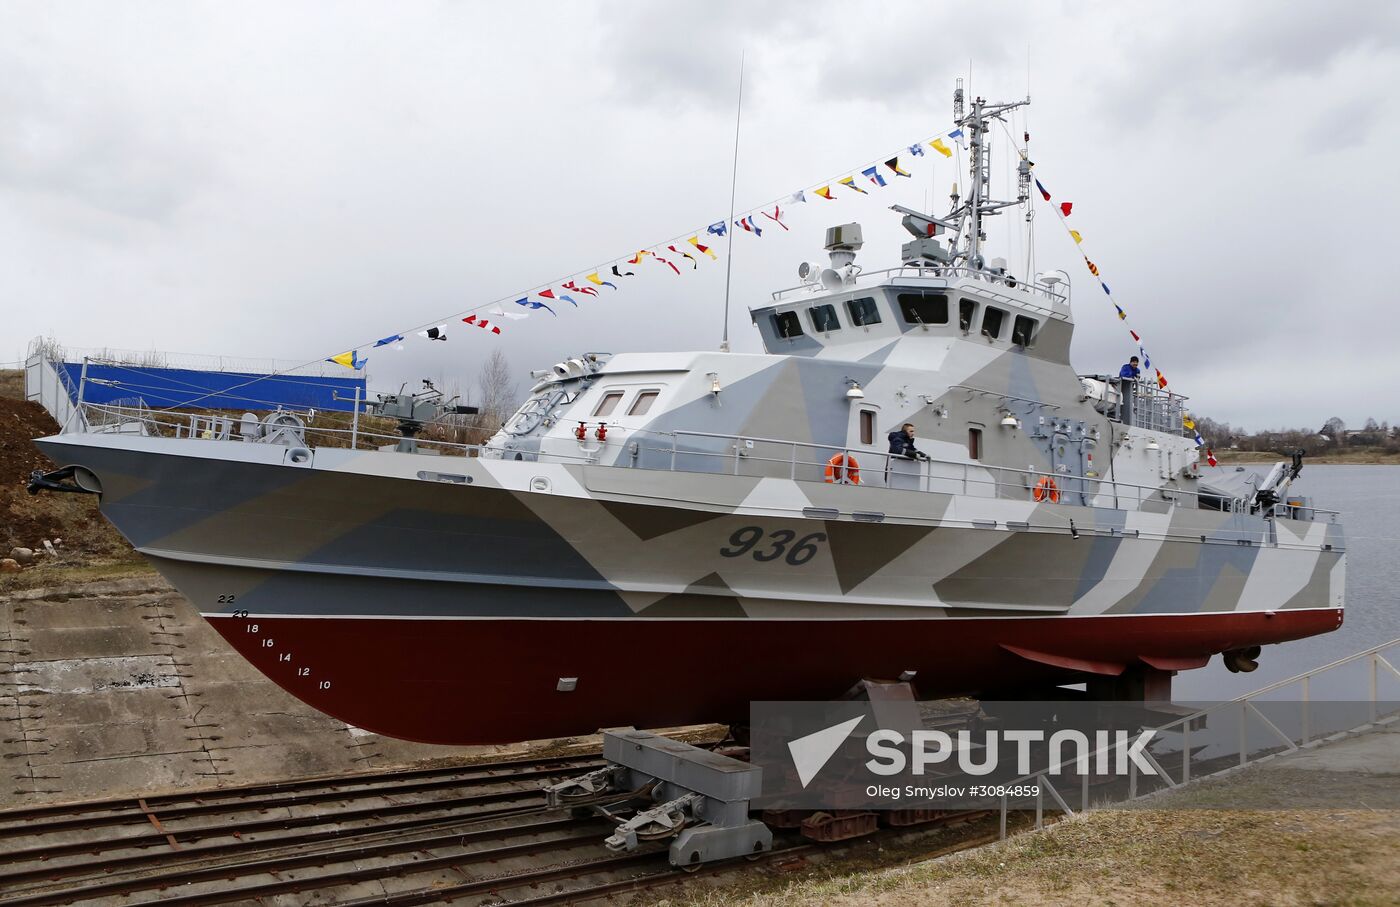 Launching Grachonok anti-terror vessel in Rybinsk